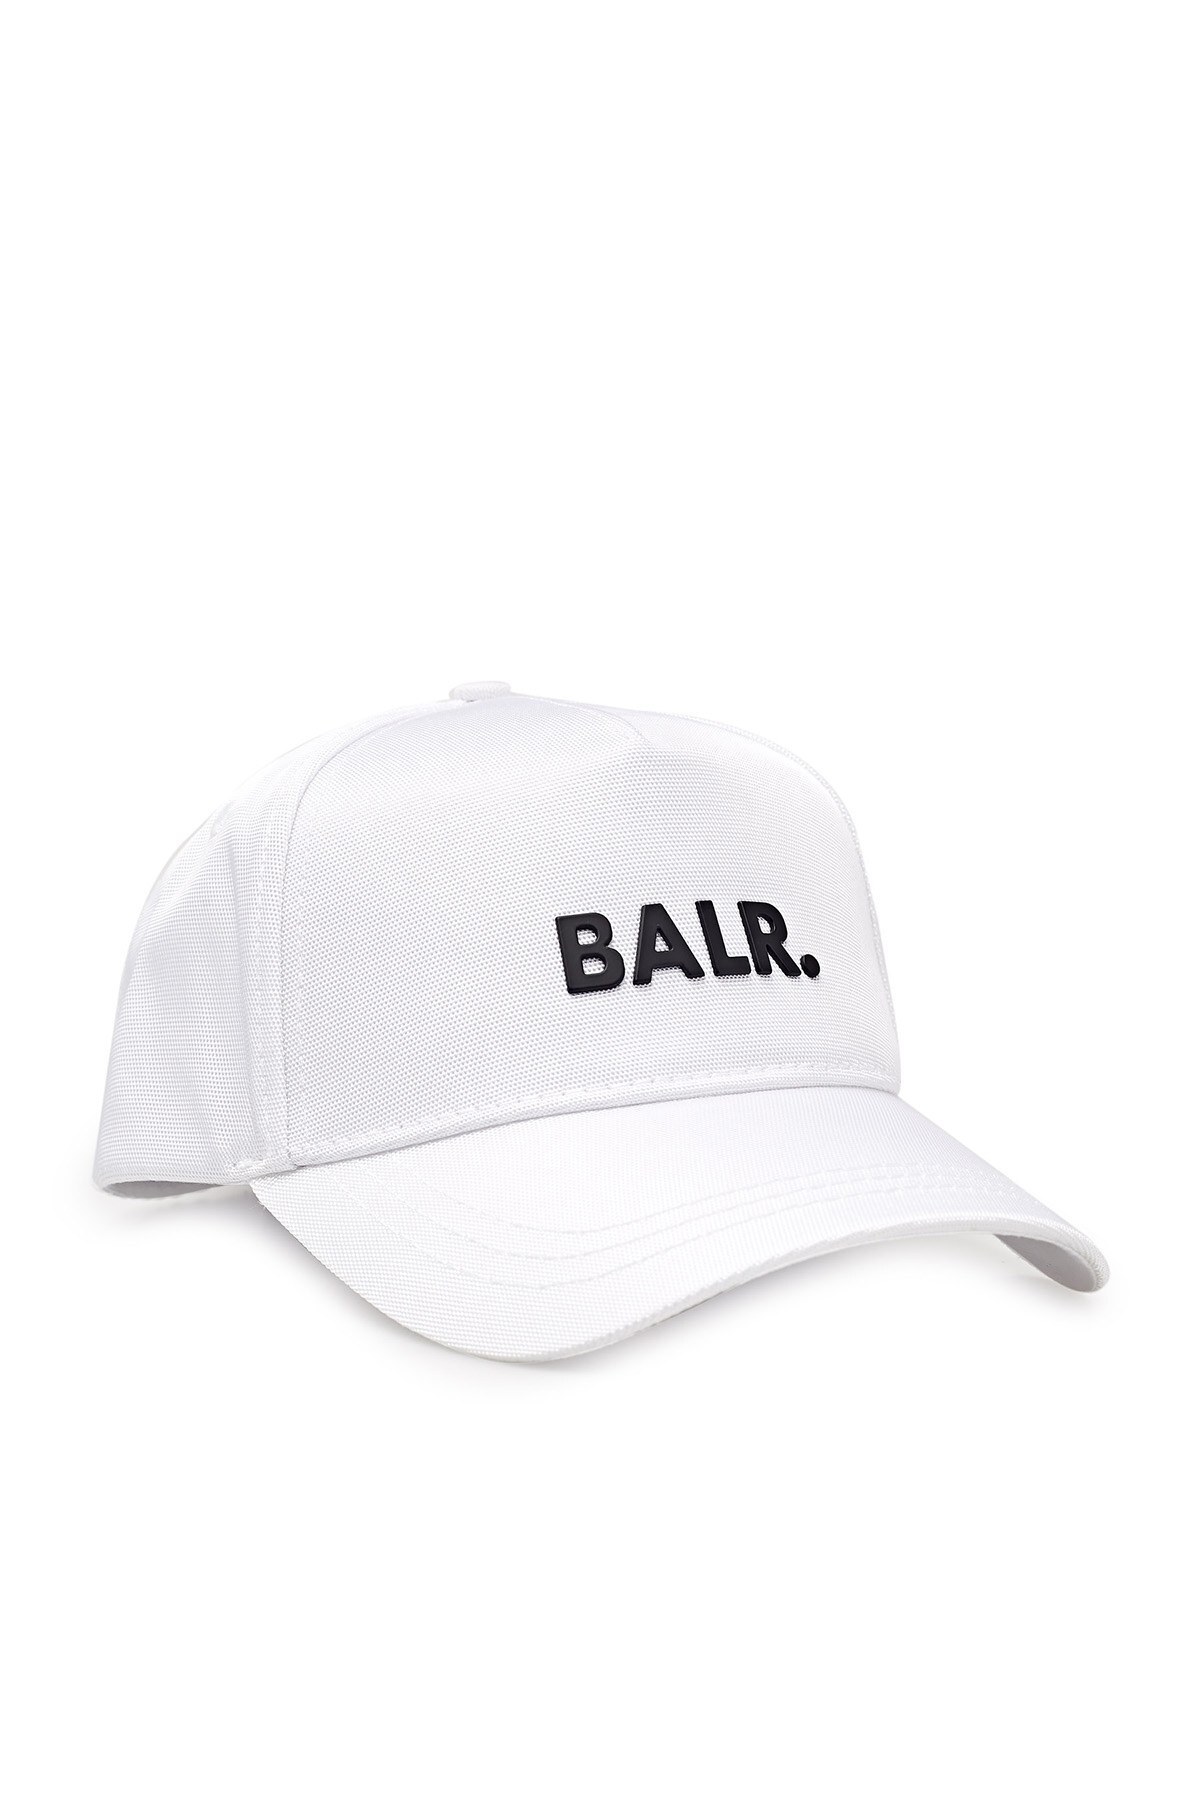 Balr Pamuklu Marka Logolu Erkek Şapka B10014 W BEYAZ